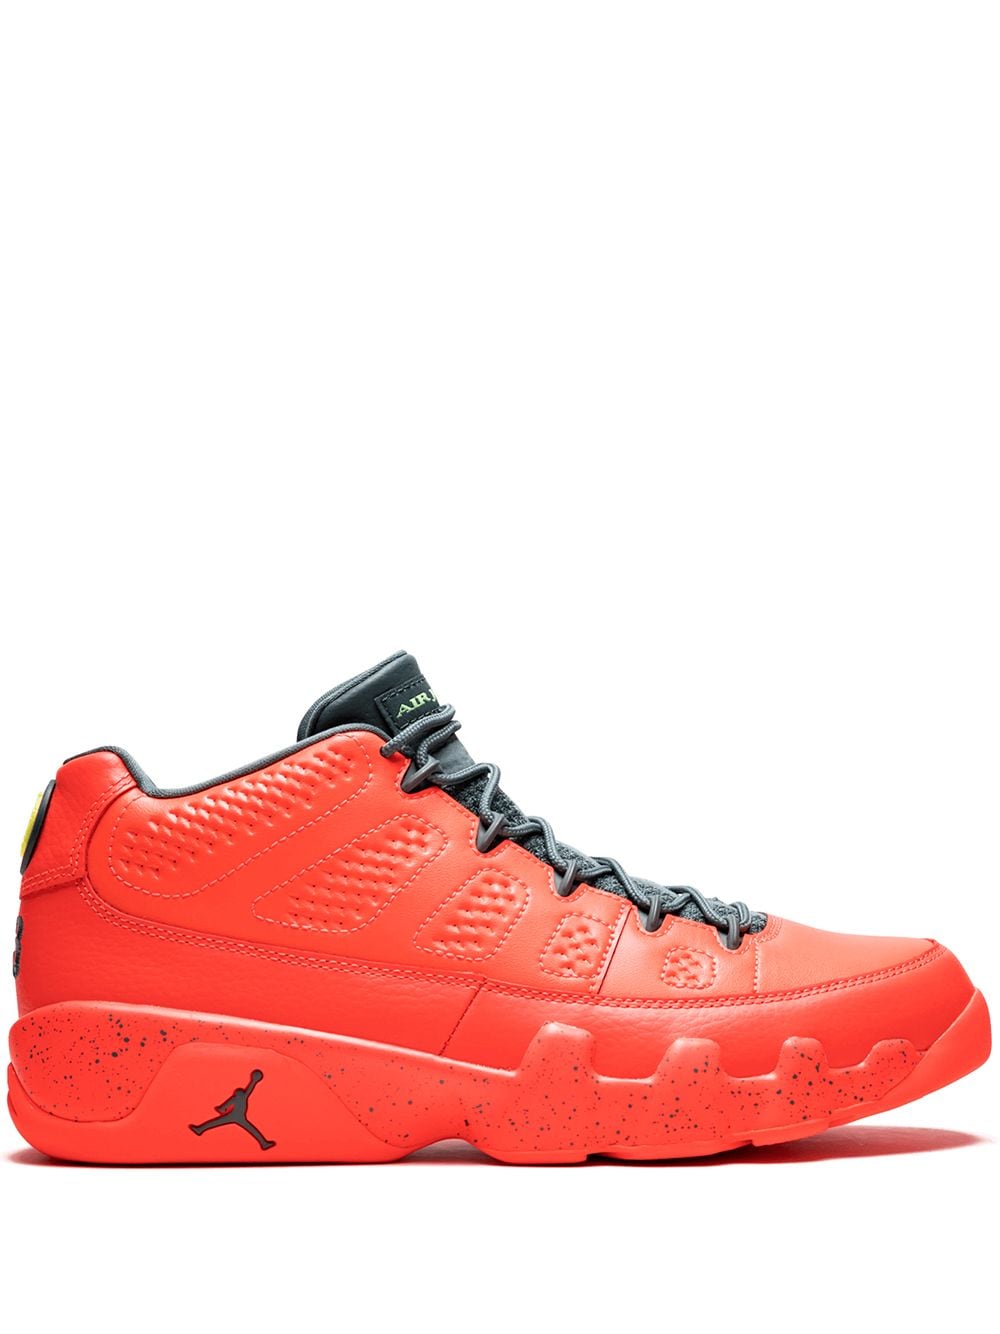 Jordan Air Jordan 9 Retro Low sneakers - Orange